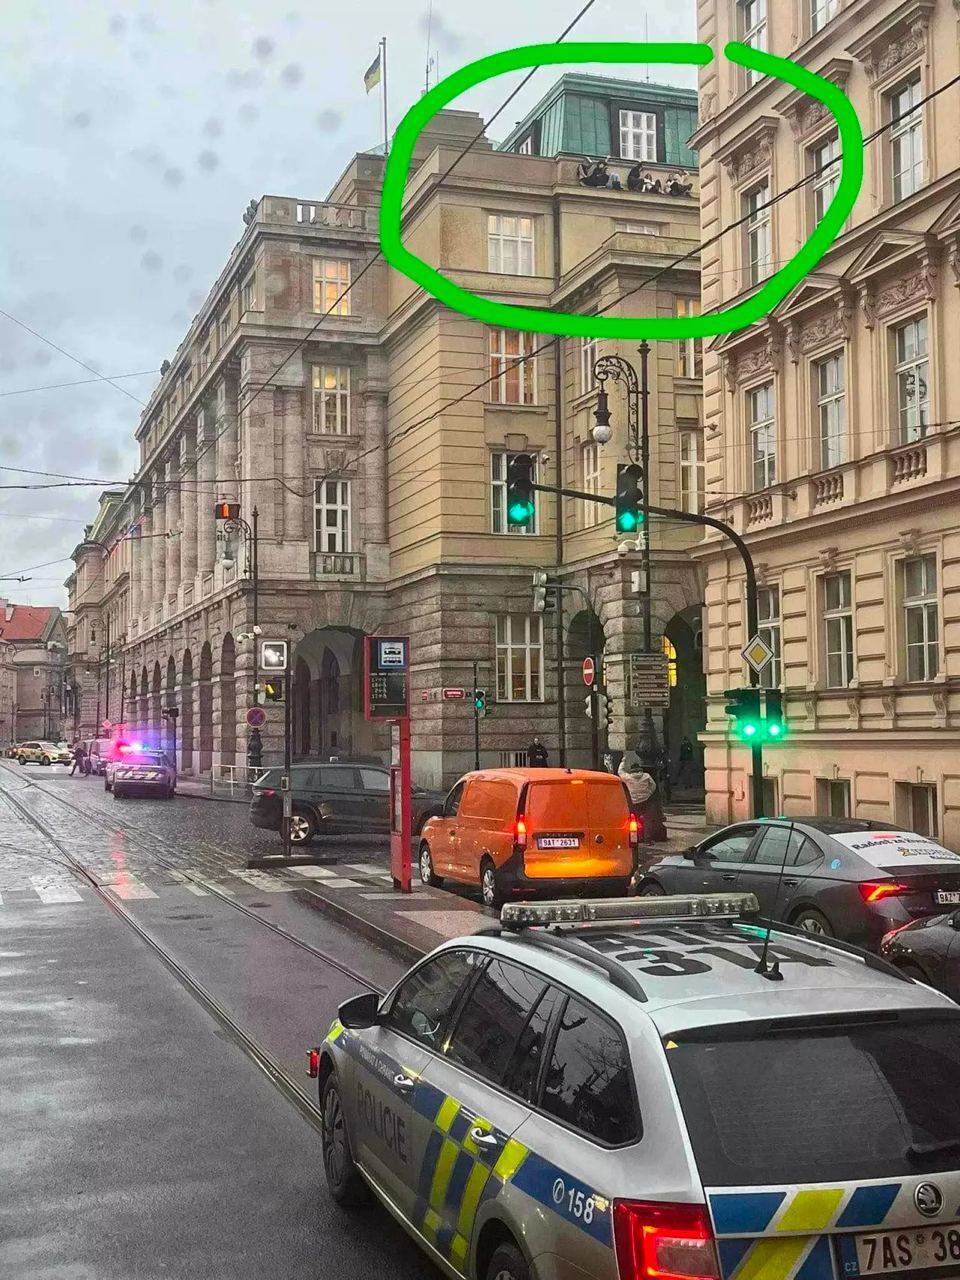 В Праге произошла стрельба в университете: убиты 15 человек, нападающий покончил с собой. Все детали